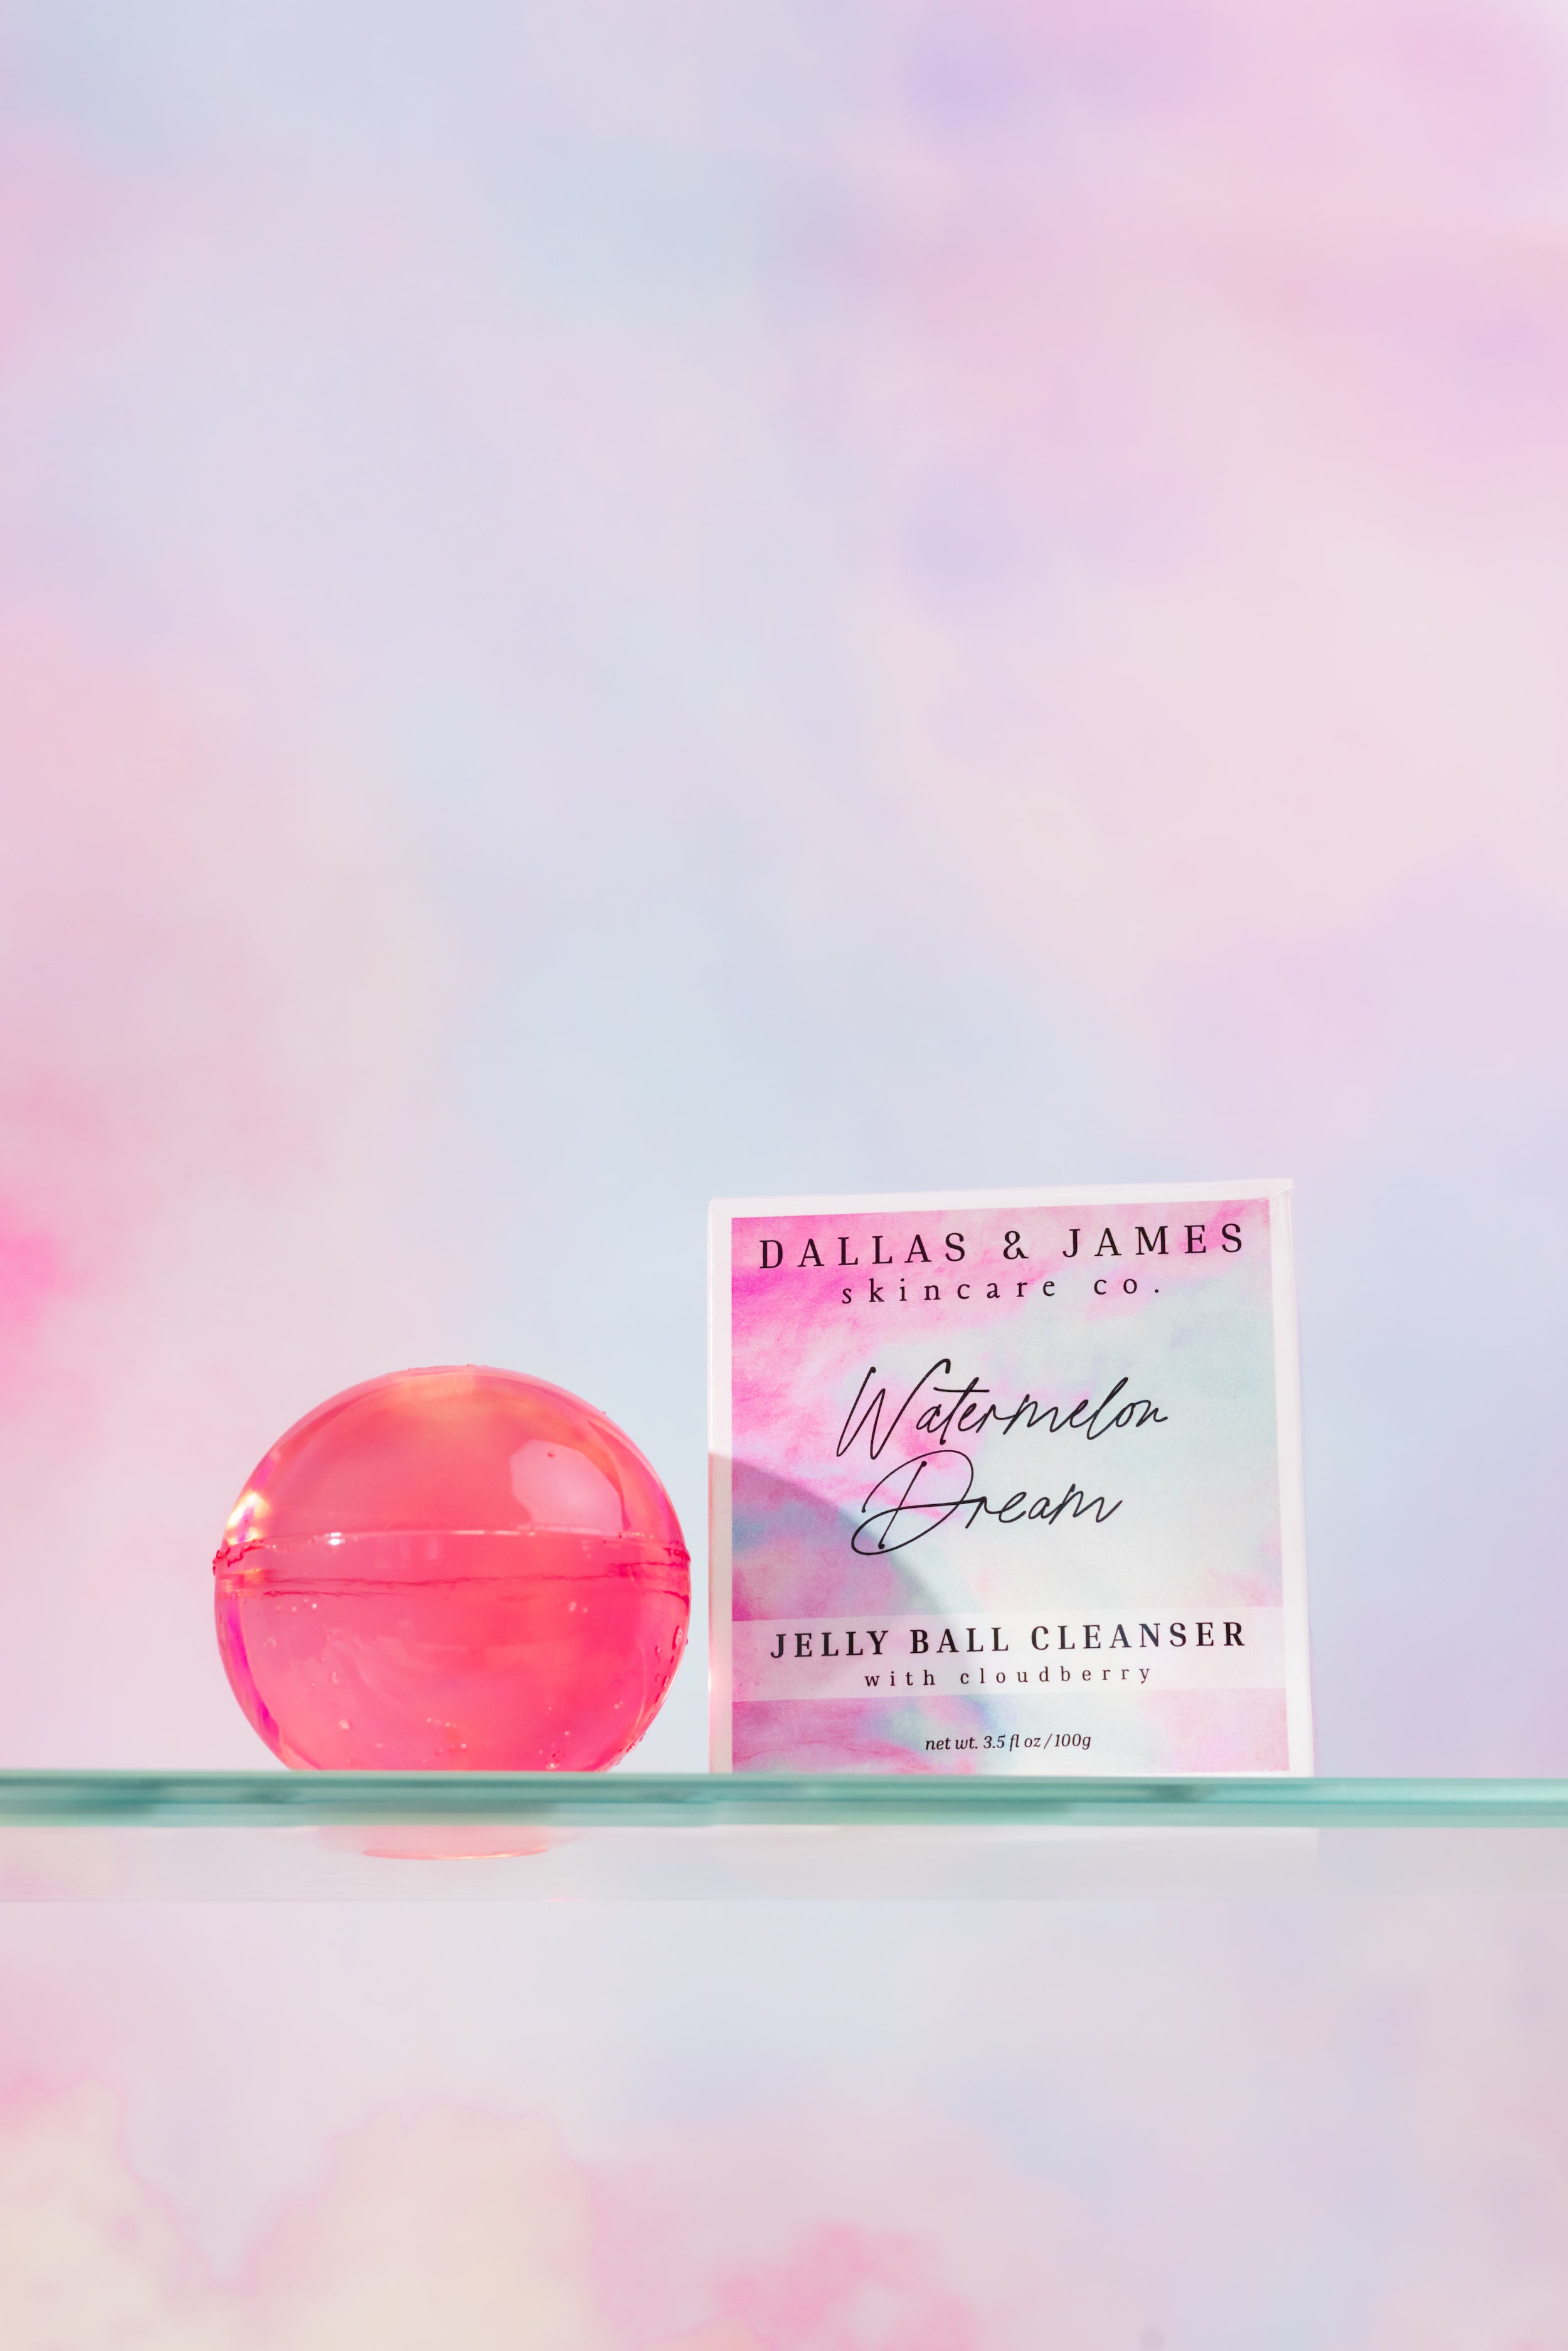 Dallas & James Skincare Co. Watermelon Dream Jelly Ball Cleanser